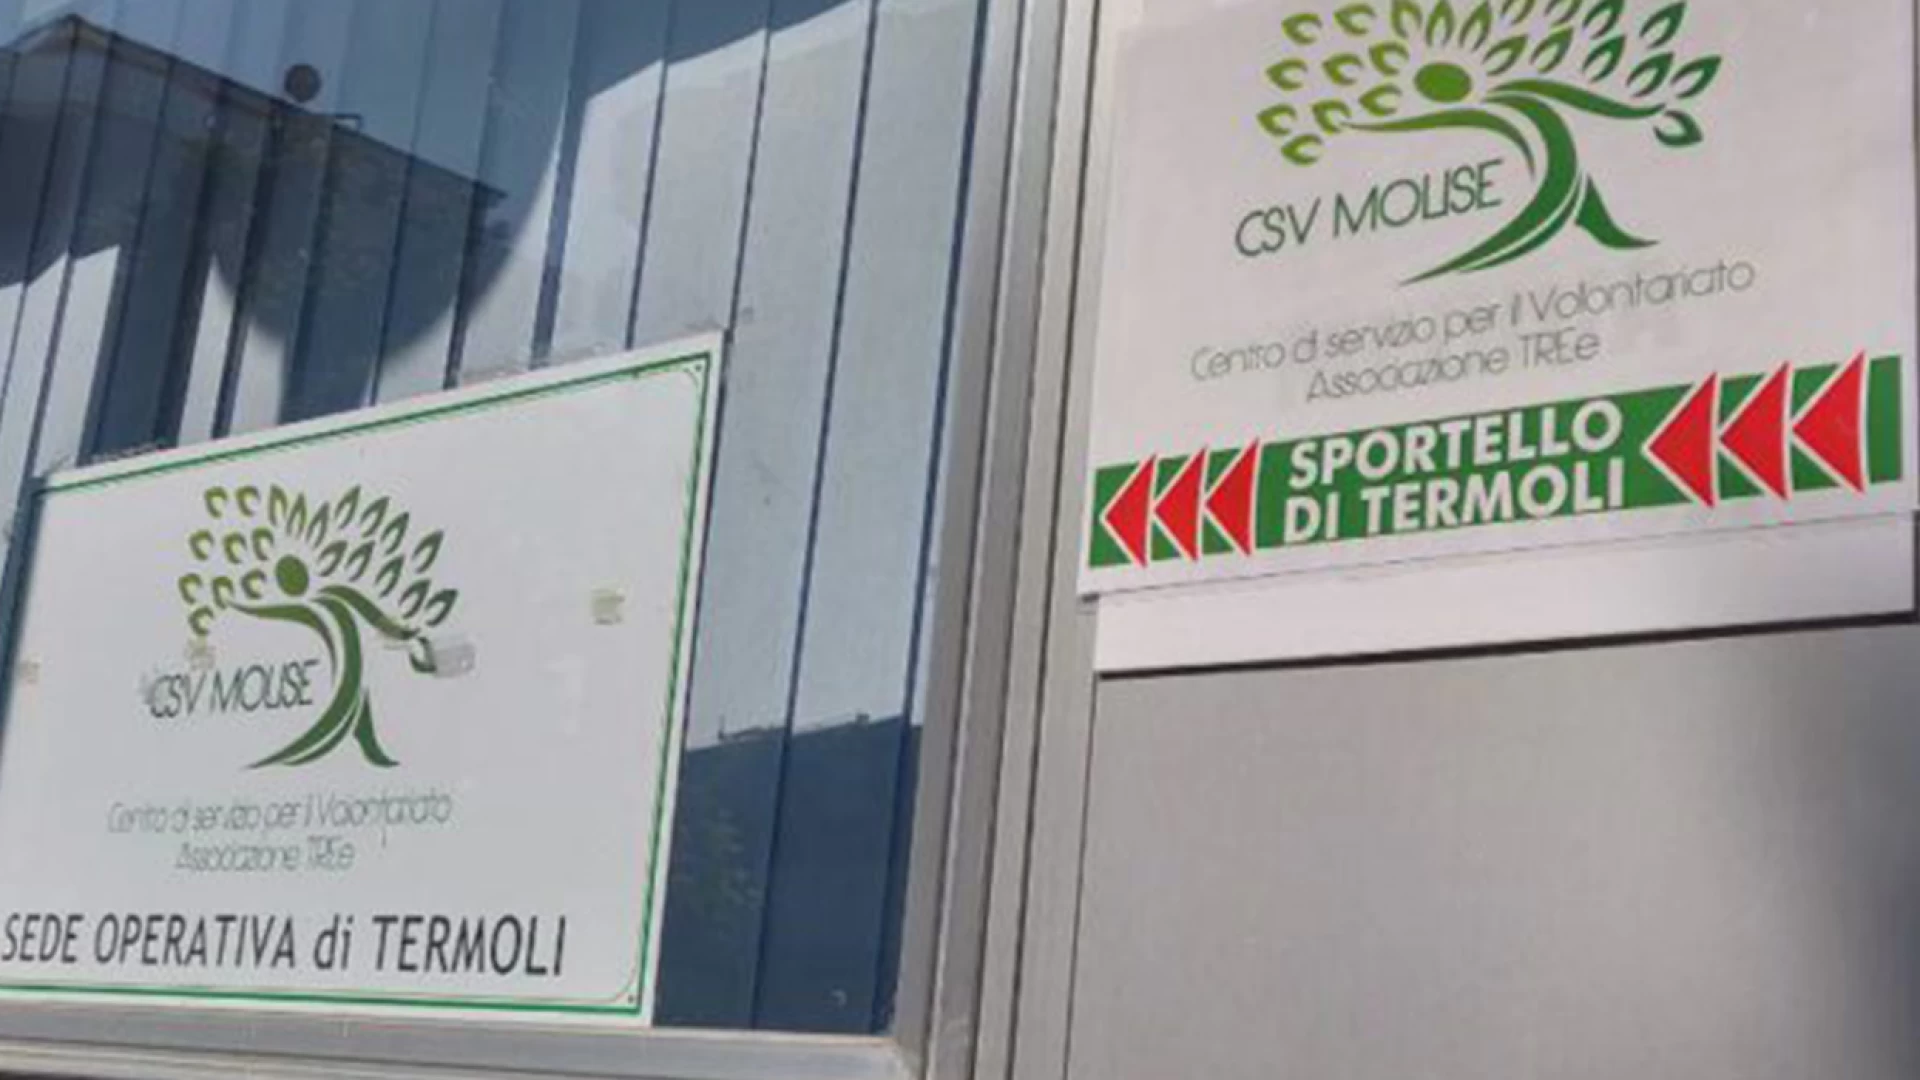 Termoli: aumentano i servizi presso la sede del Csv Molise